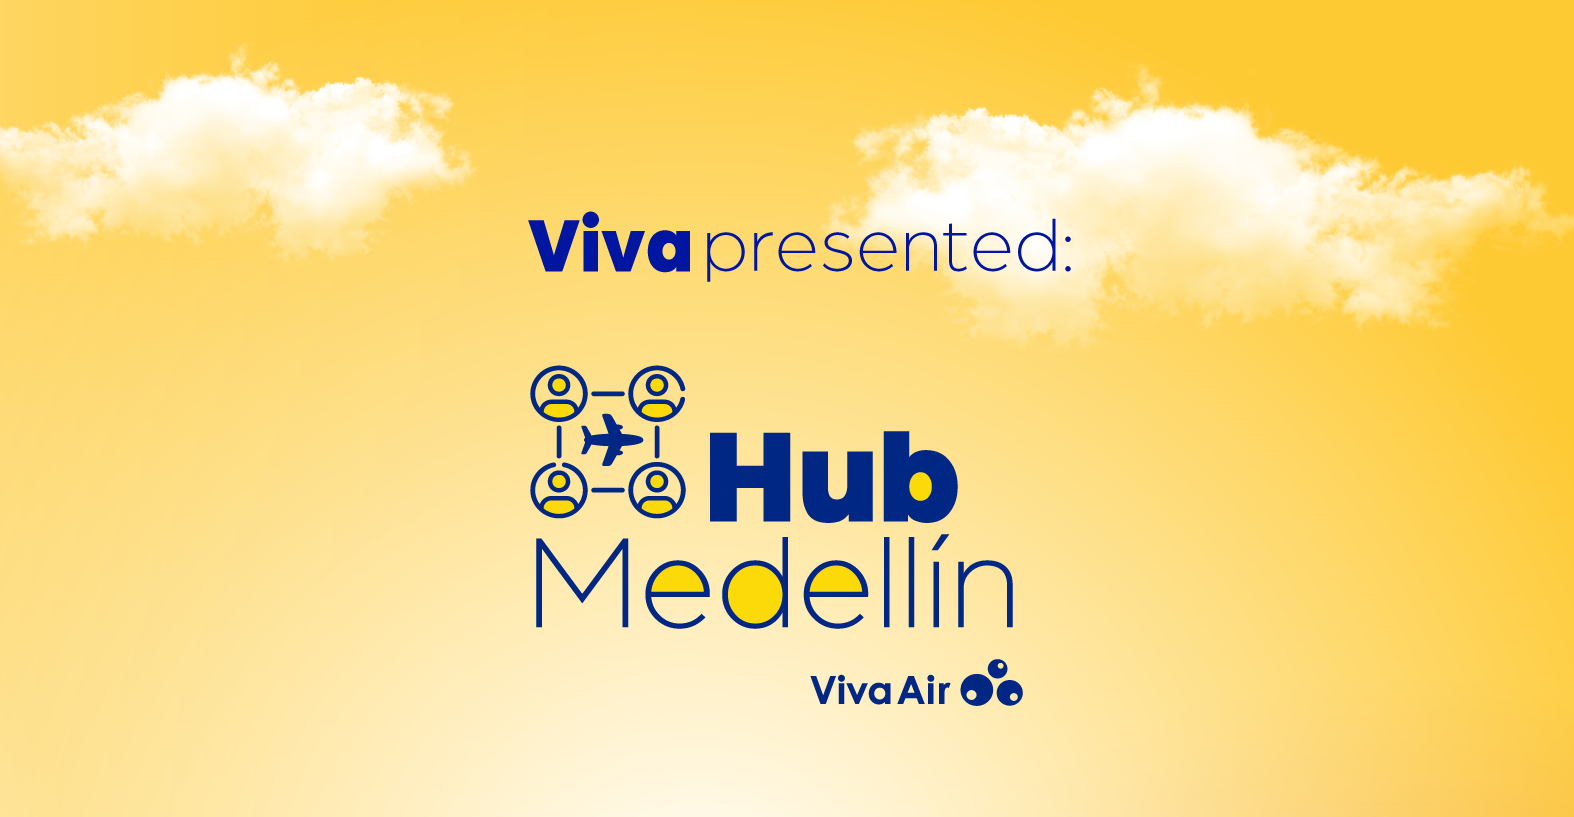 Hub Medellín Viva Air